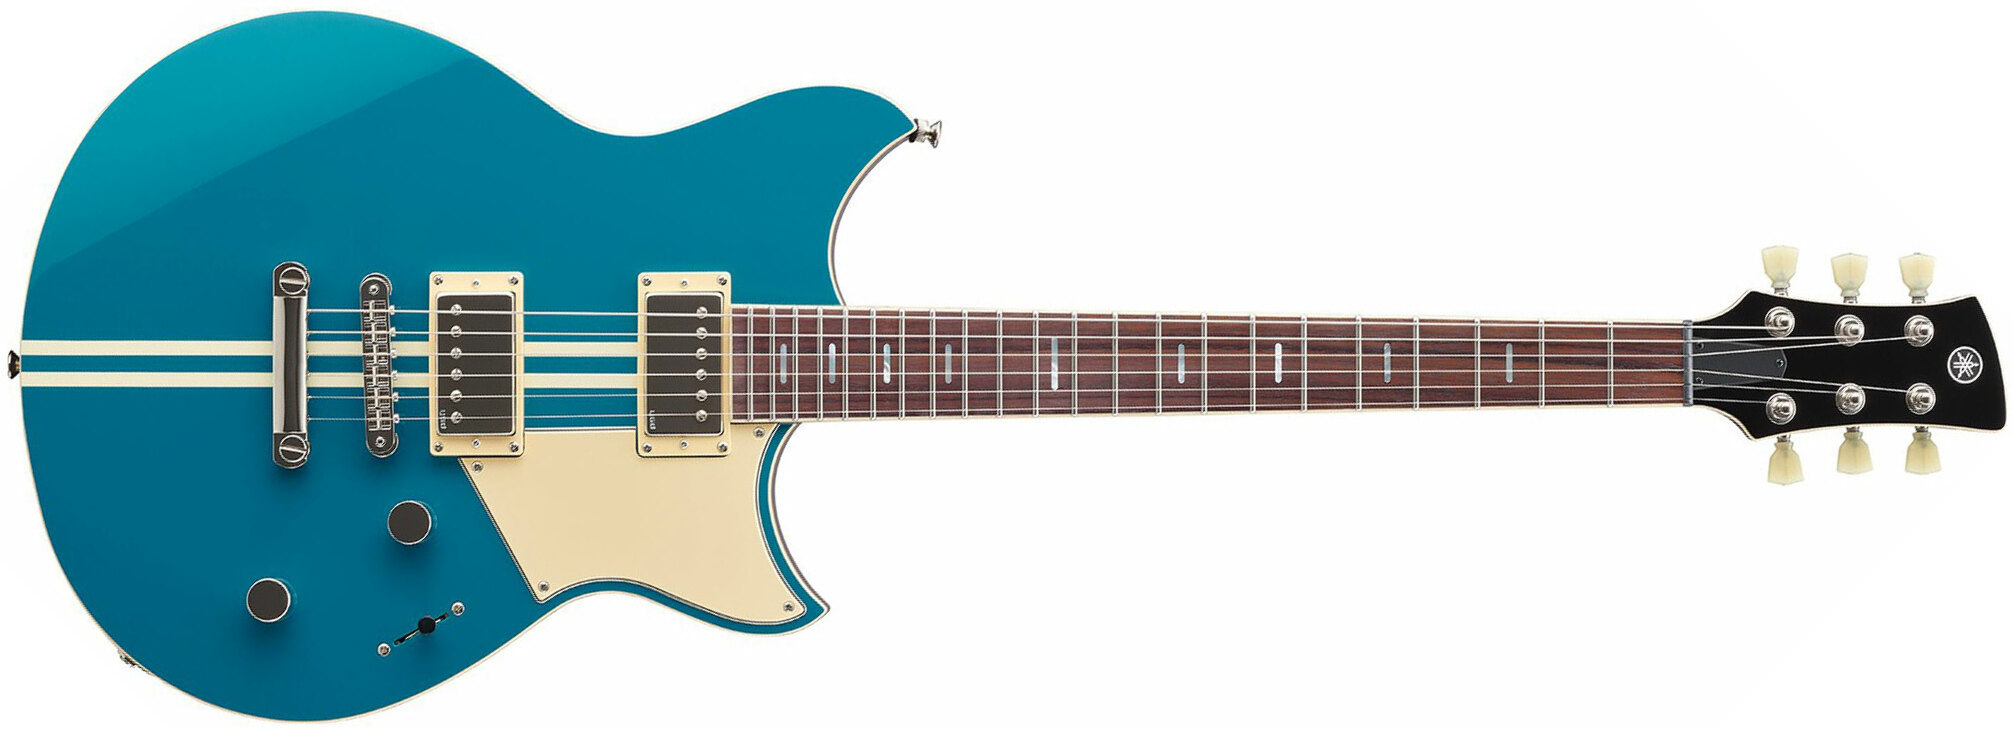 Yamaha Rss20 Revstar Standard Hh Ht Rw - Swift Blue - Guitarra eléctrica de doble corte. - Main picture